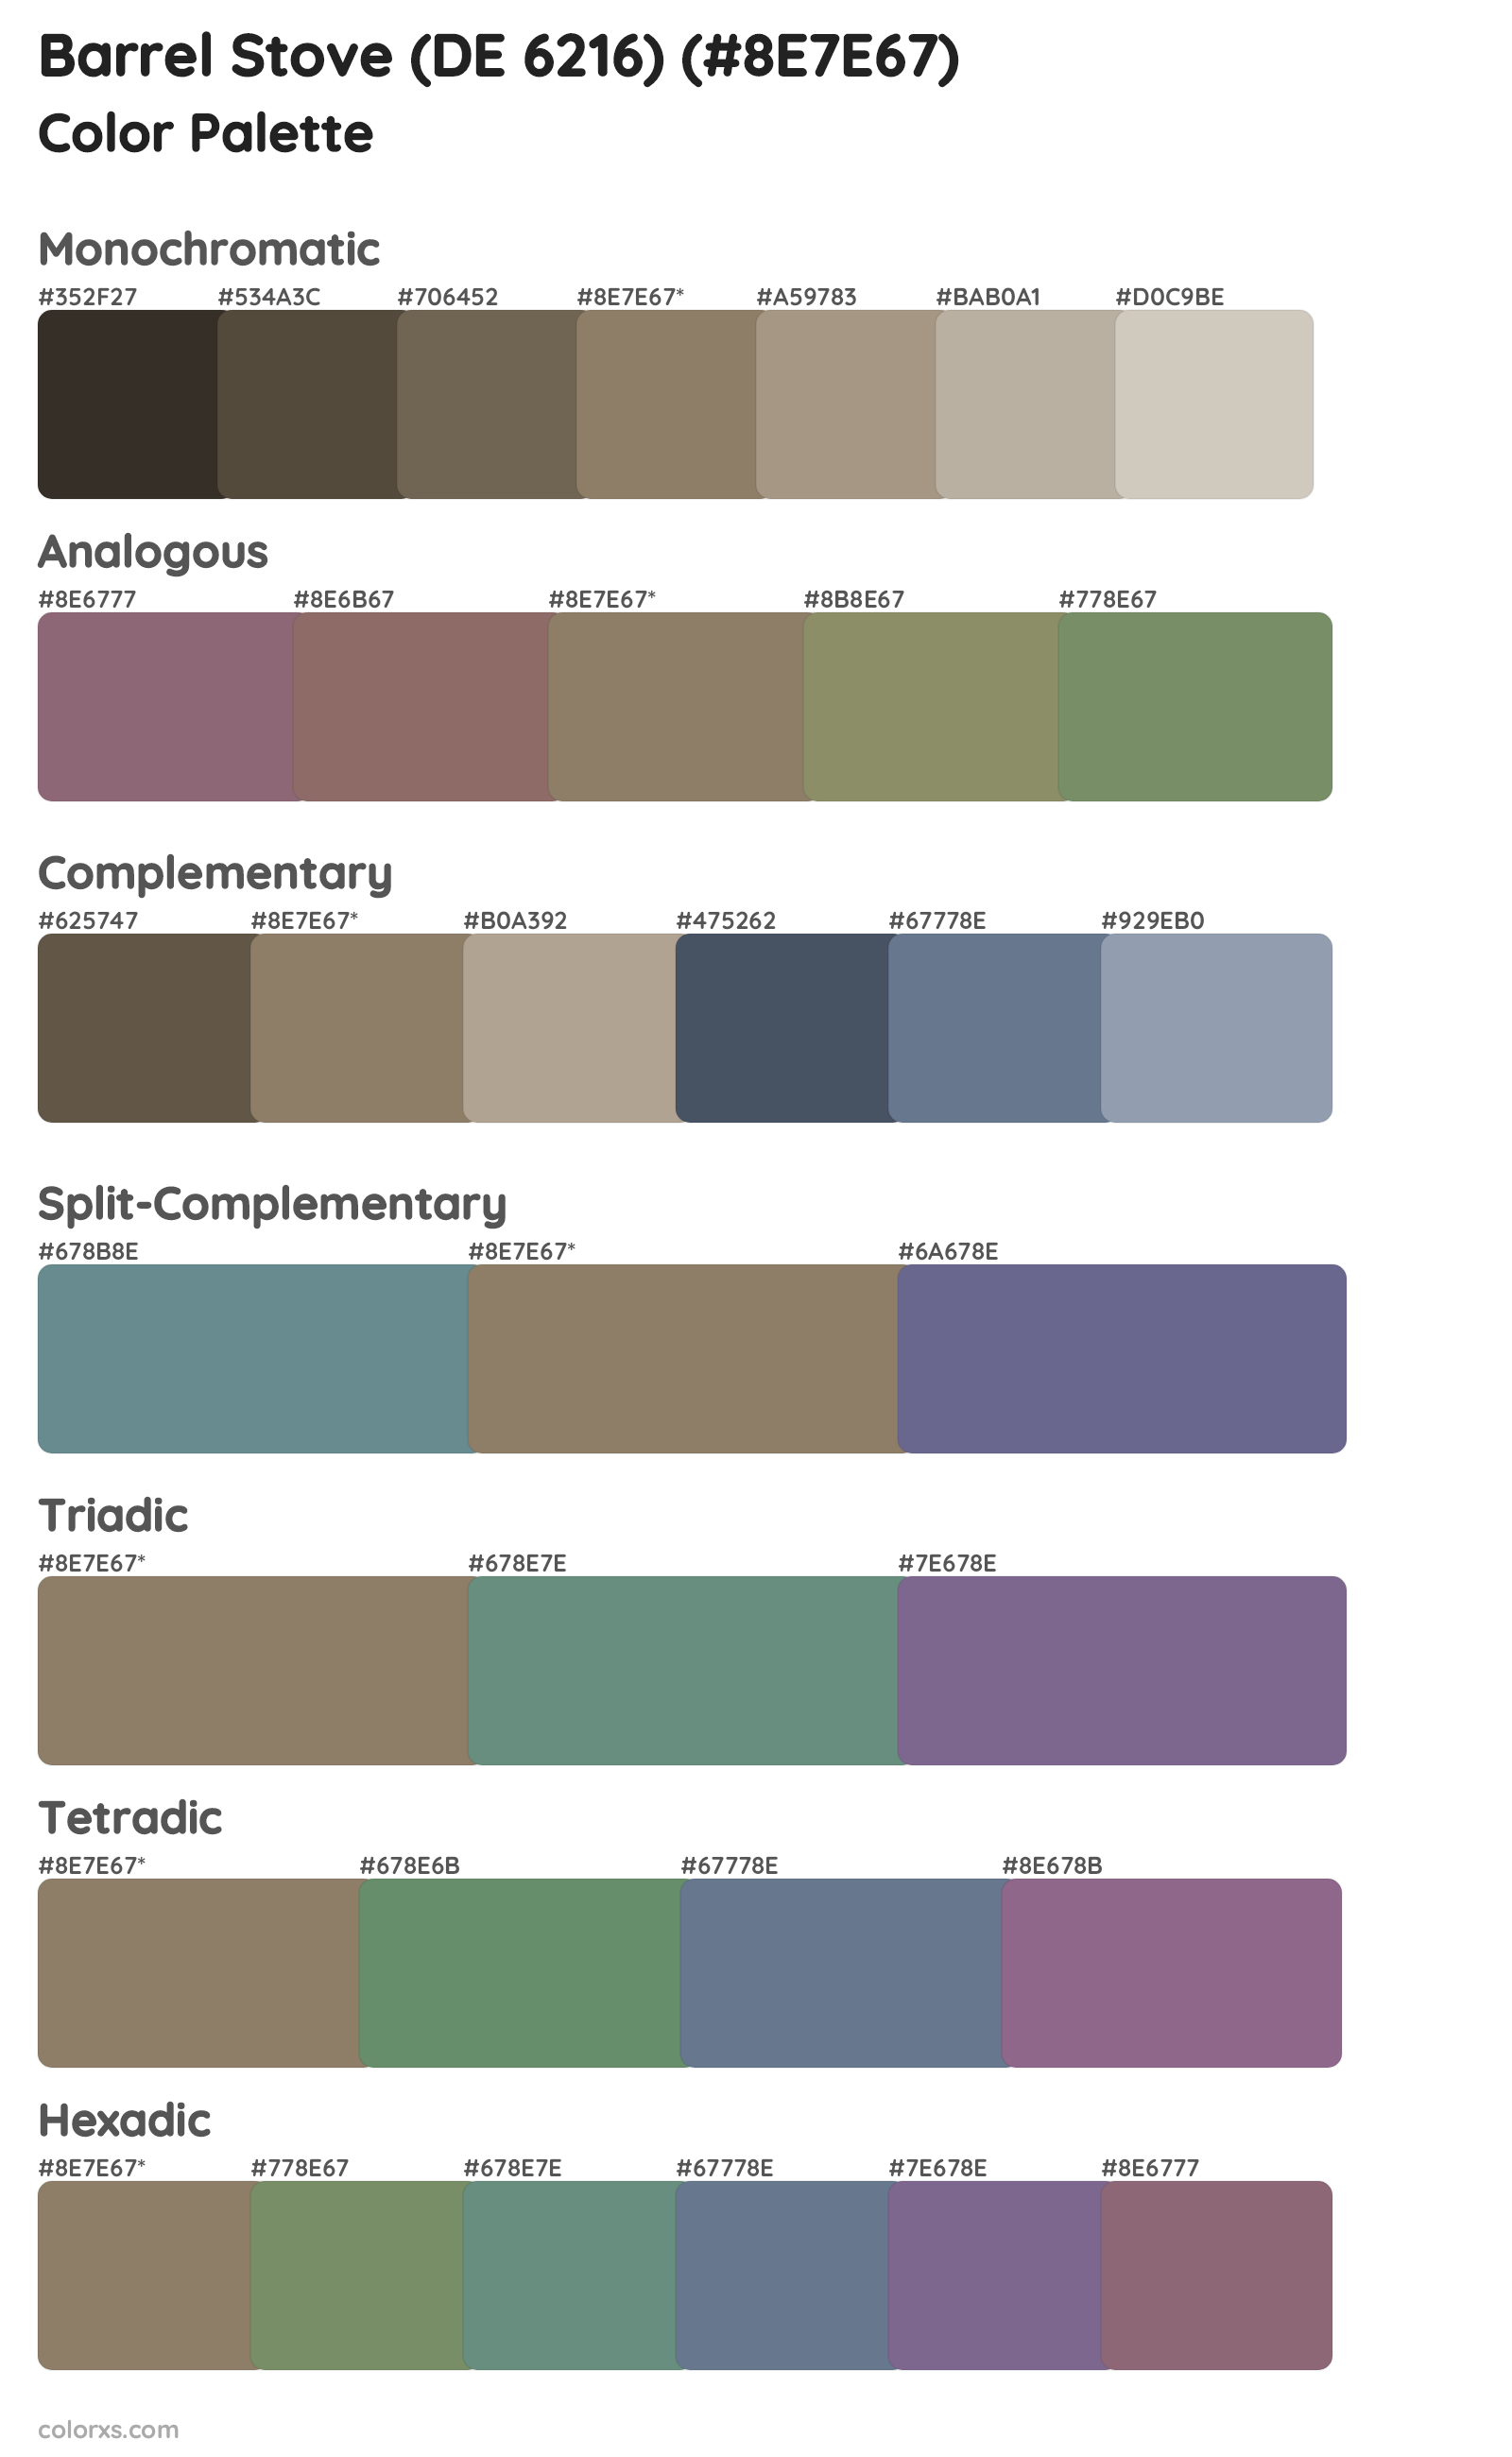 Barrel Stove (DE 6216) Color Scheme Palettes